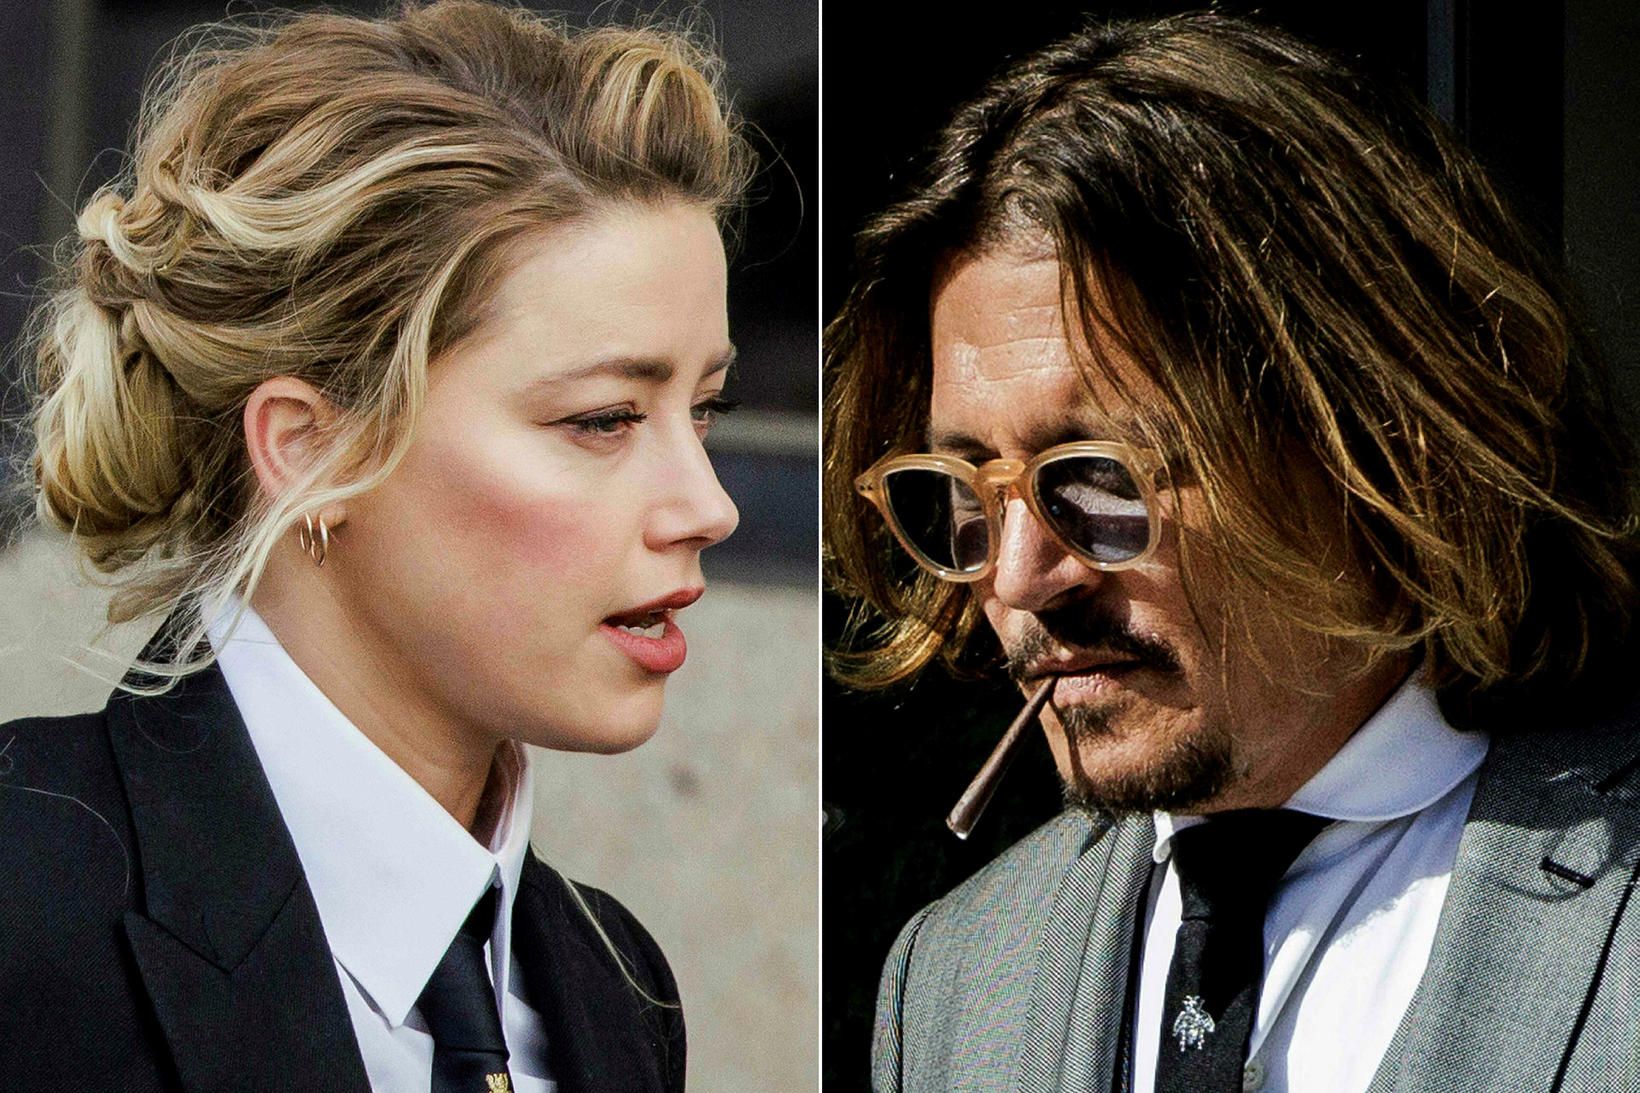 Örlög þeirra Amber Heard og Johnny Depp eru í höndum …